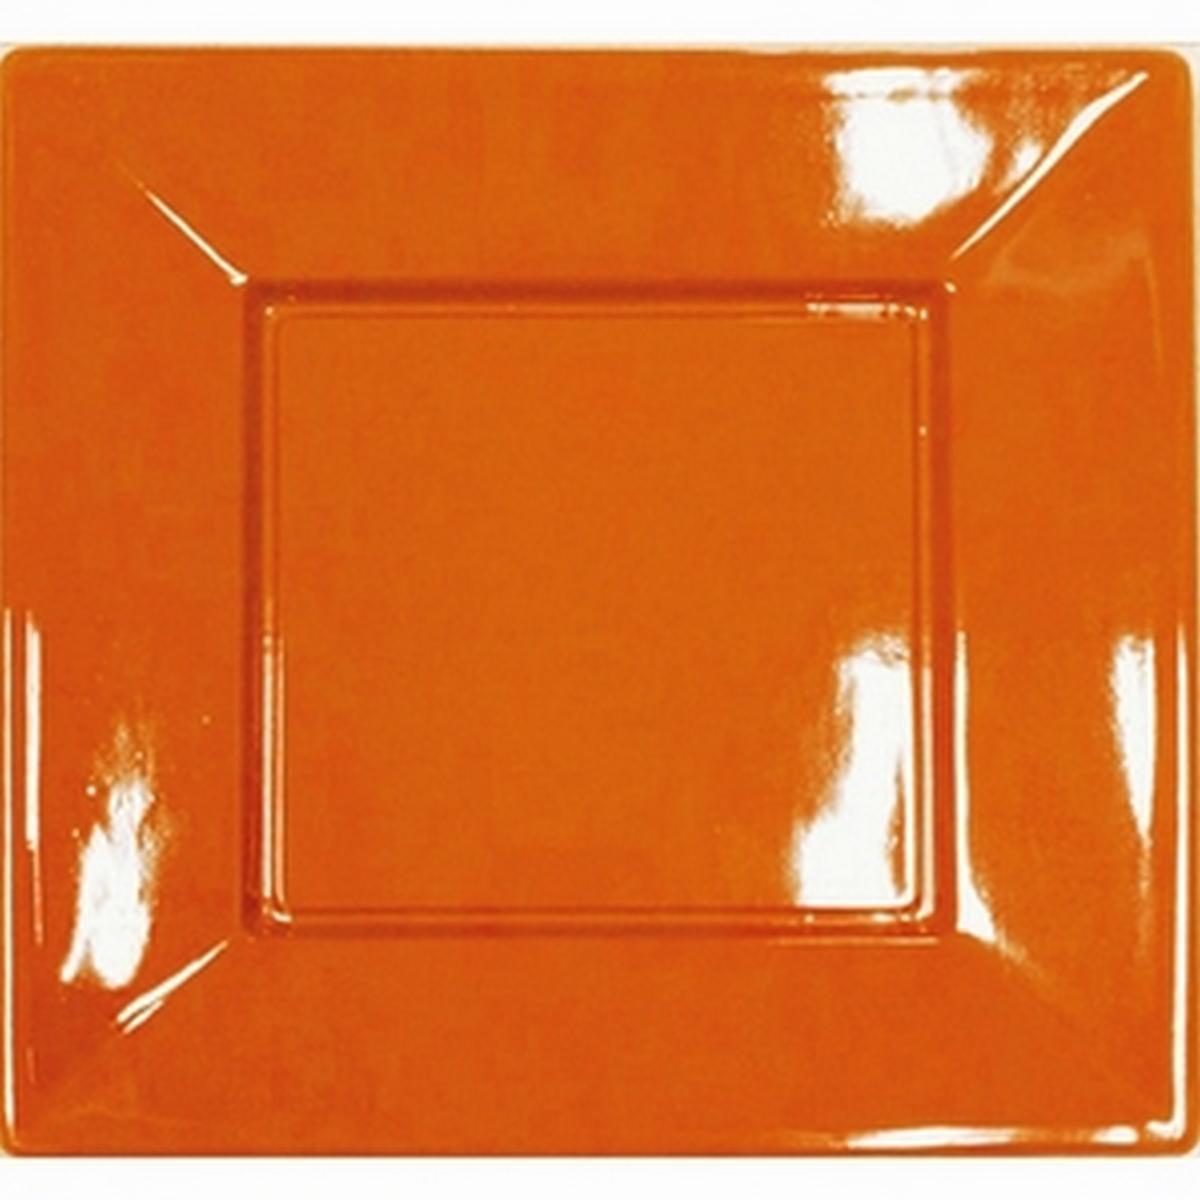 4 assiettes carrées jetables en plastique - 23 x 23 cm - Orange